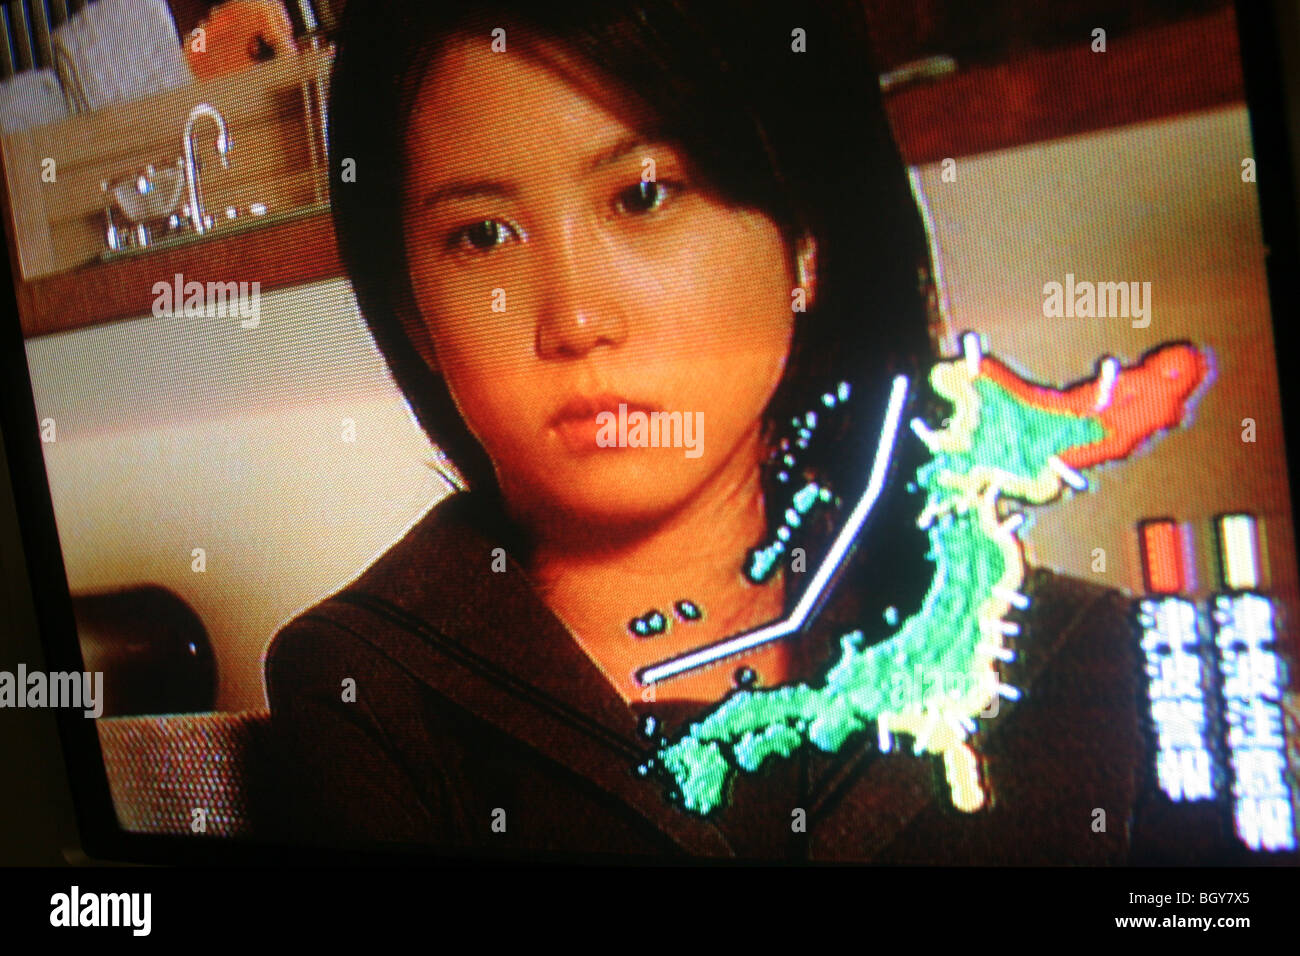 Eine Tsunami-Warnung ist während einer TV-Drama im japanischen Fernsehen gezeigt. Stockfoto